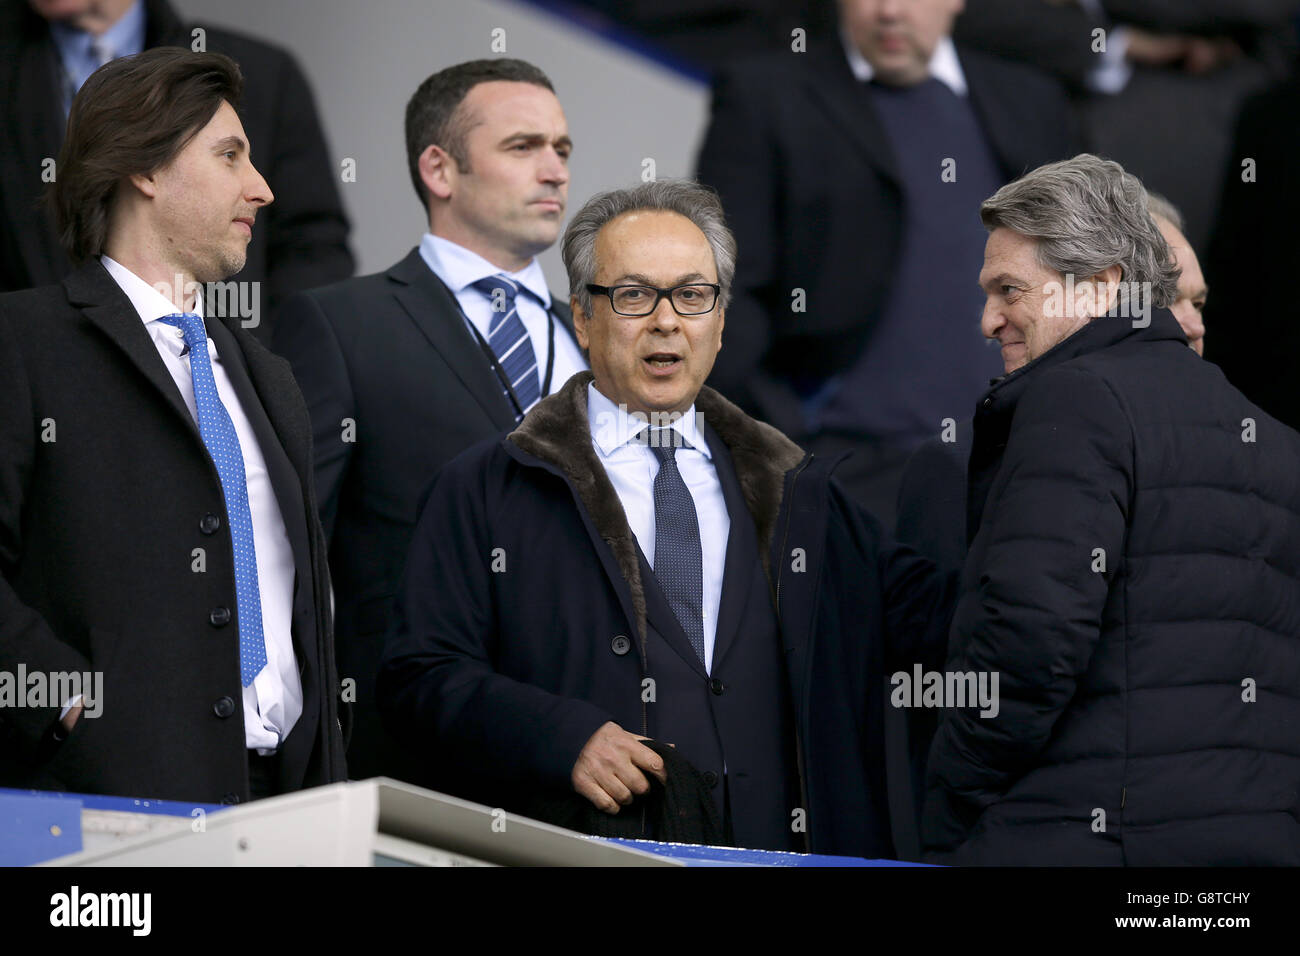 Nuevo propietario de Everton Farhad Moshiri (centro) en los stands antes del partido Barclays Premier League en Goodison Park, Liverpool. Foto de stock